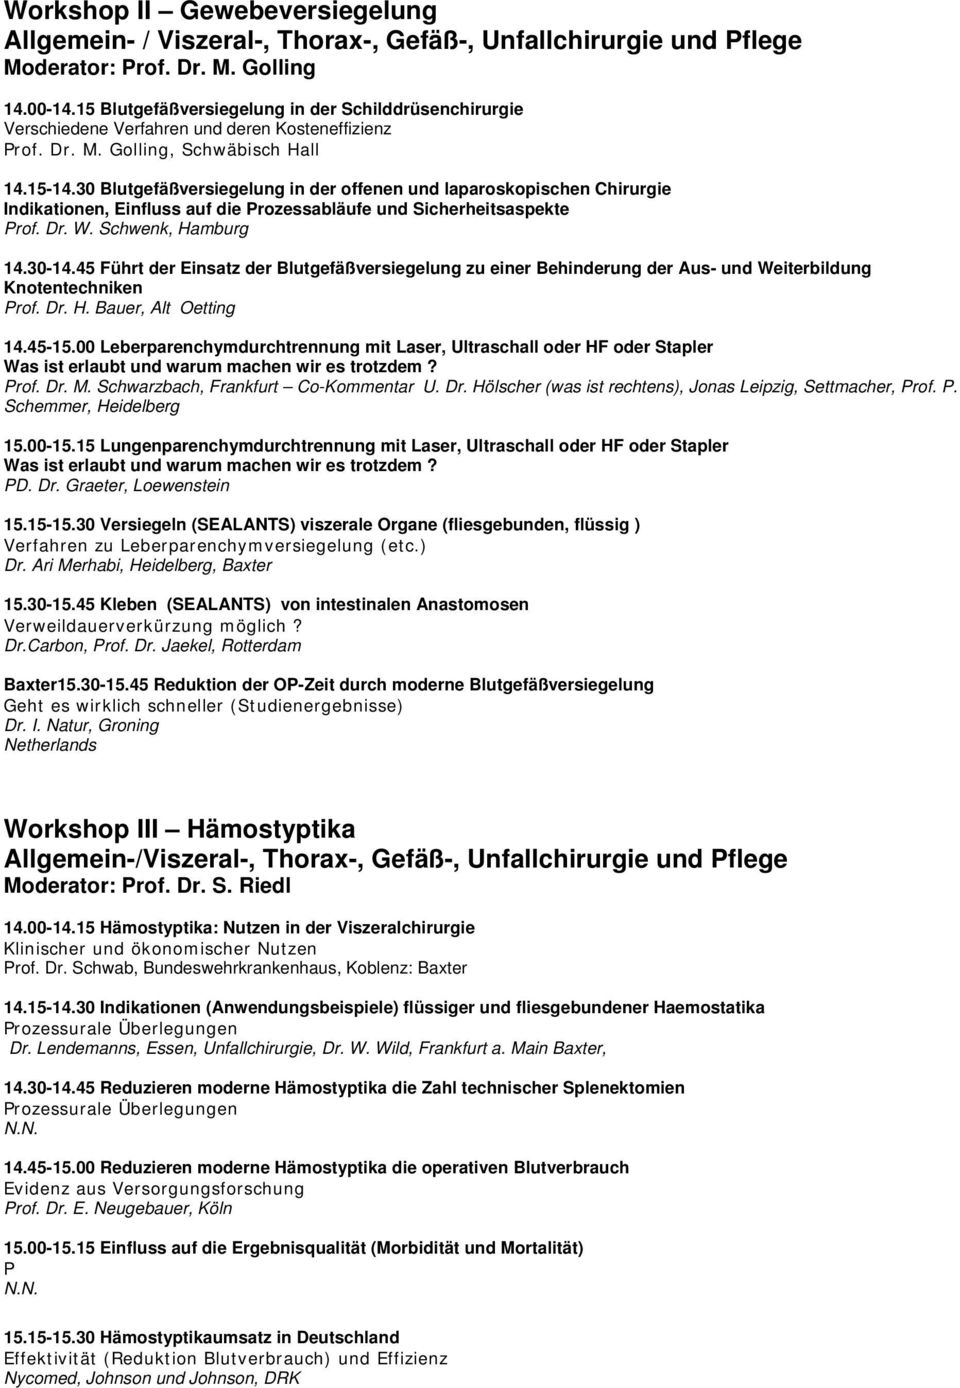 30 Blutgefäßversiegelung in der offenen und laparoskopischen Chirurgie Indikationen, Einfluss auf die Prozessabläufe und Sicherheitsaspekte Prof. Dr. W. Schwenk, Hamburg 14.30-14.